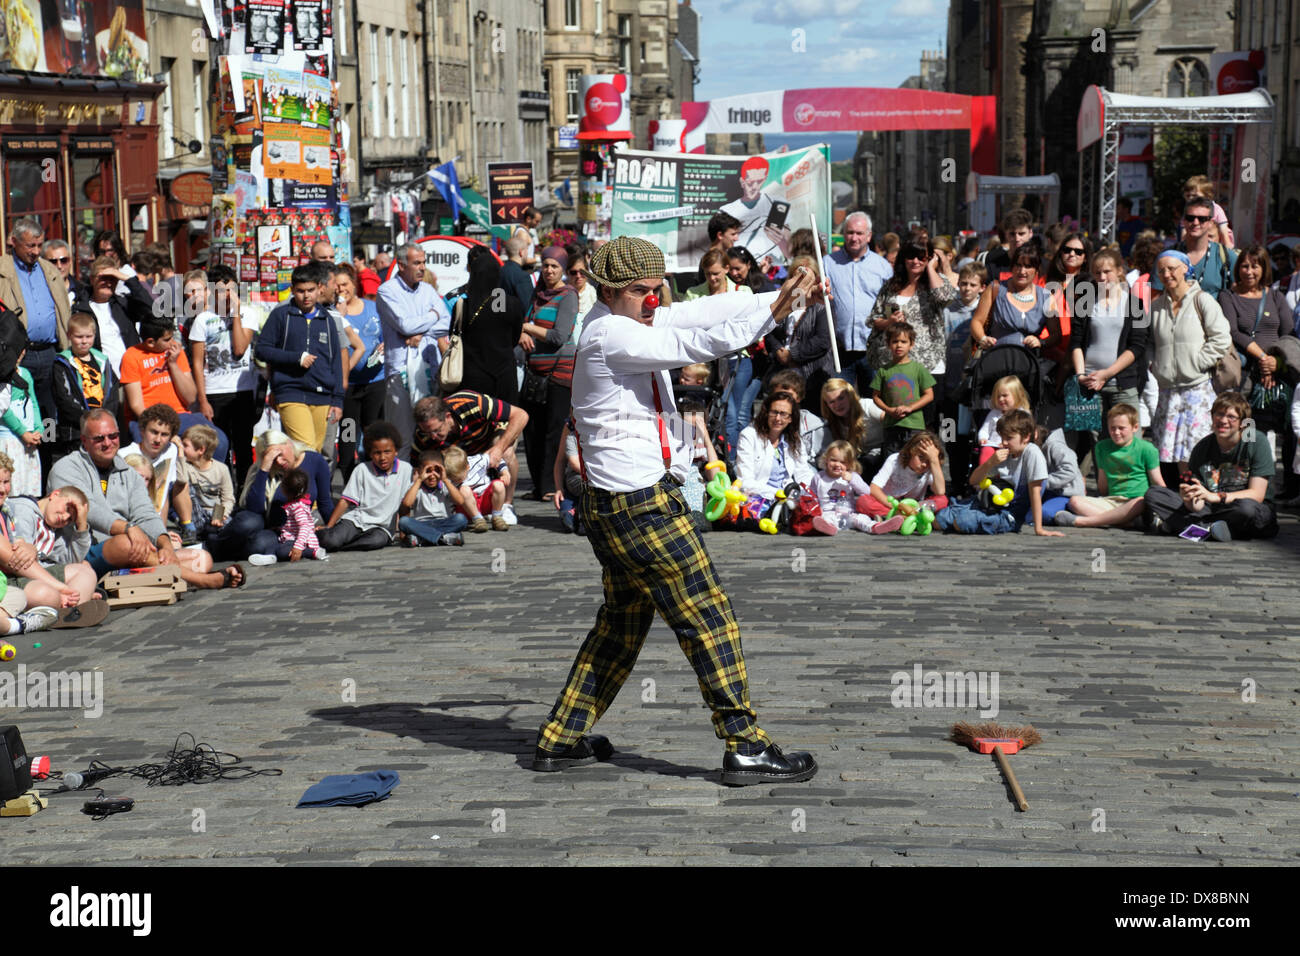 Street Performer Comedian Pedro Tochas aus Portugal unterhält ein Publikum auf der Royal Mile beim Edinburgh International Festival Fringe, Schottland, Großbritannien Stockfoto